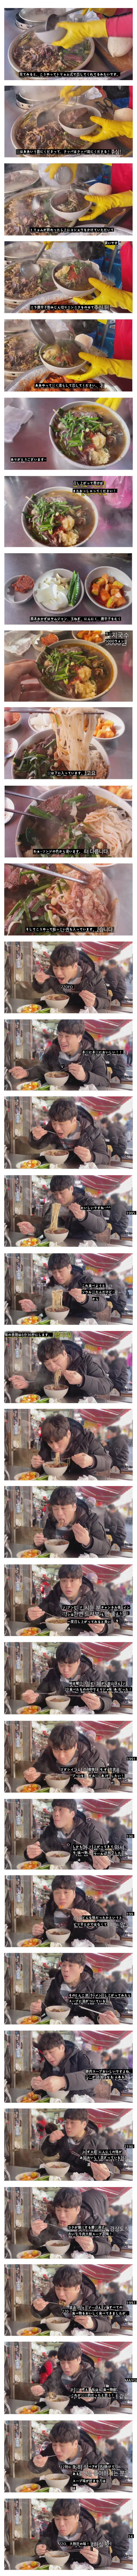 モッパンYouTuberが釜山で一番おいしく食べたという食べ物jpg